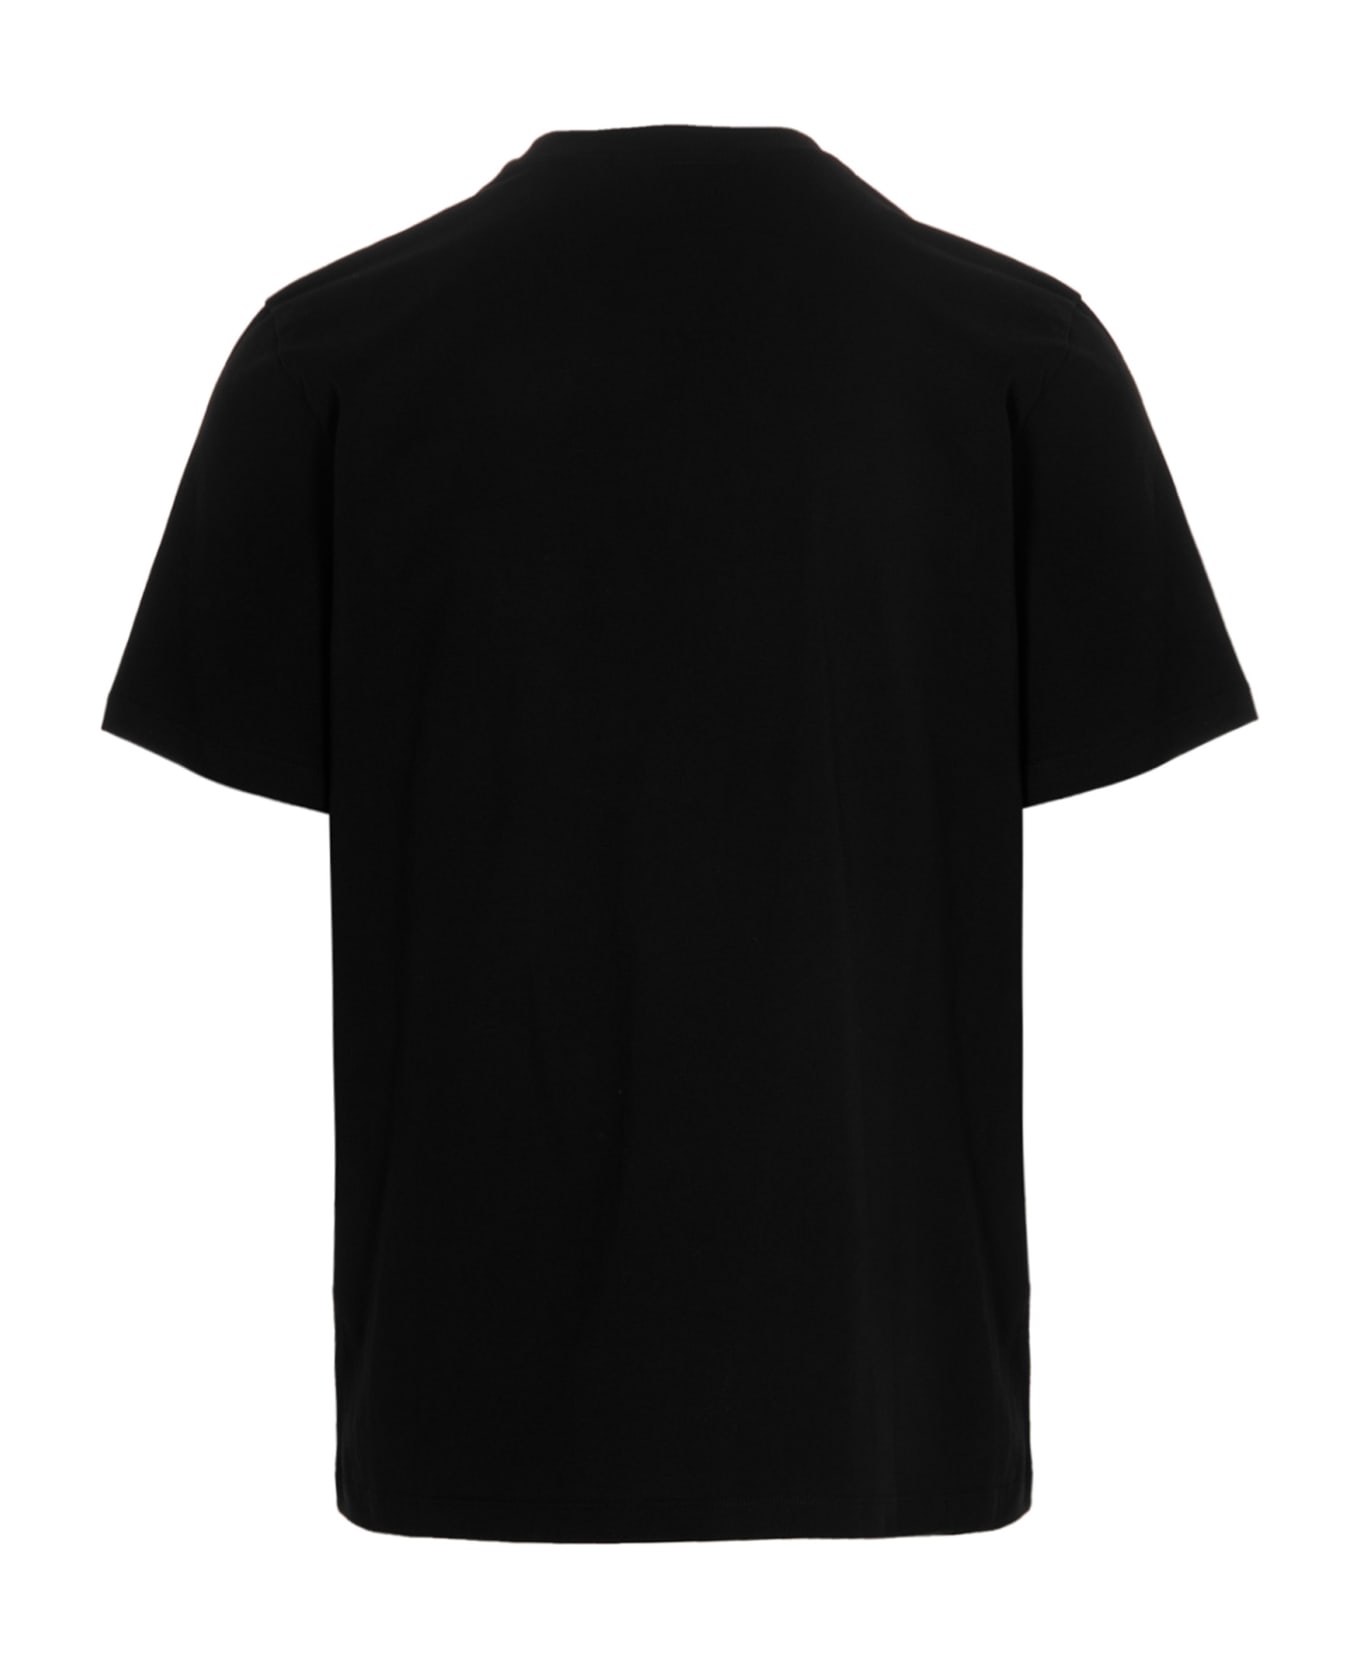 MSGM Logo T-shirt - Black   シャツ